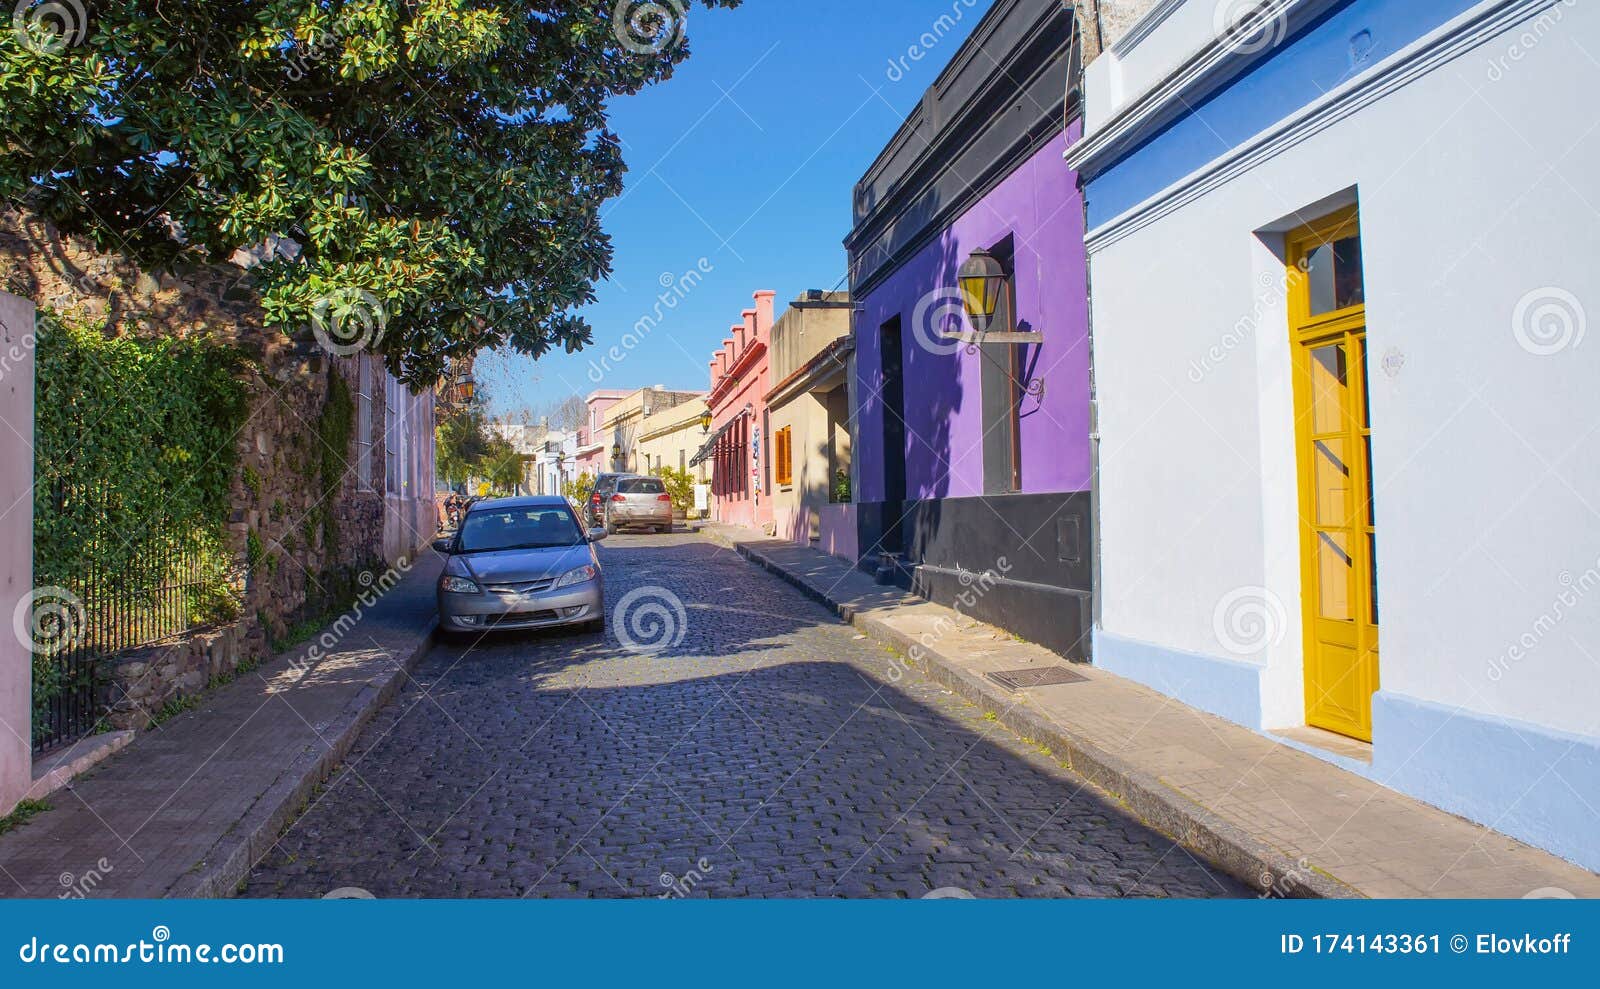 streets of colonia del sacramento in historic center barrio historico